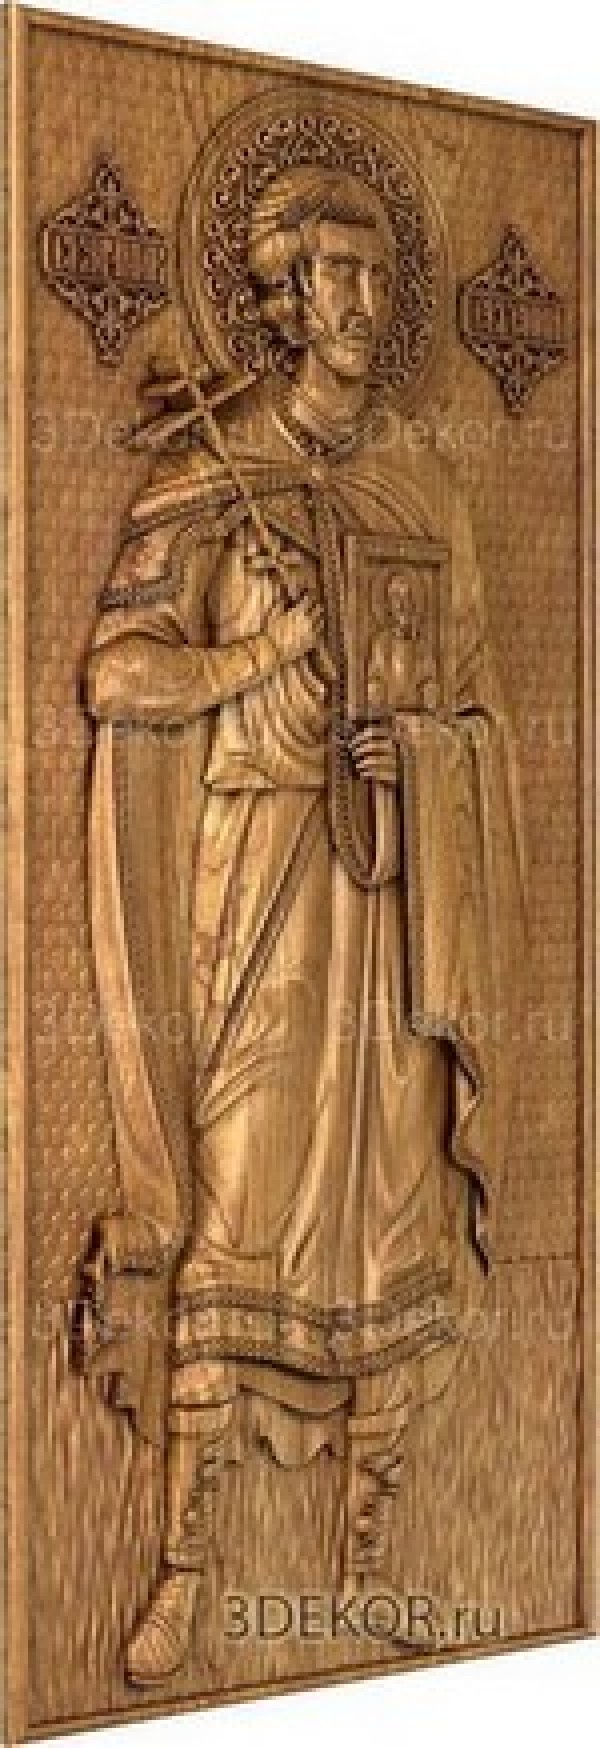 Икона Святой мученик Евгений